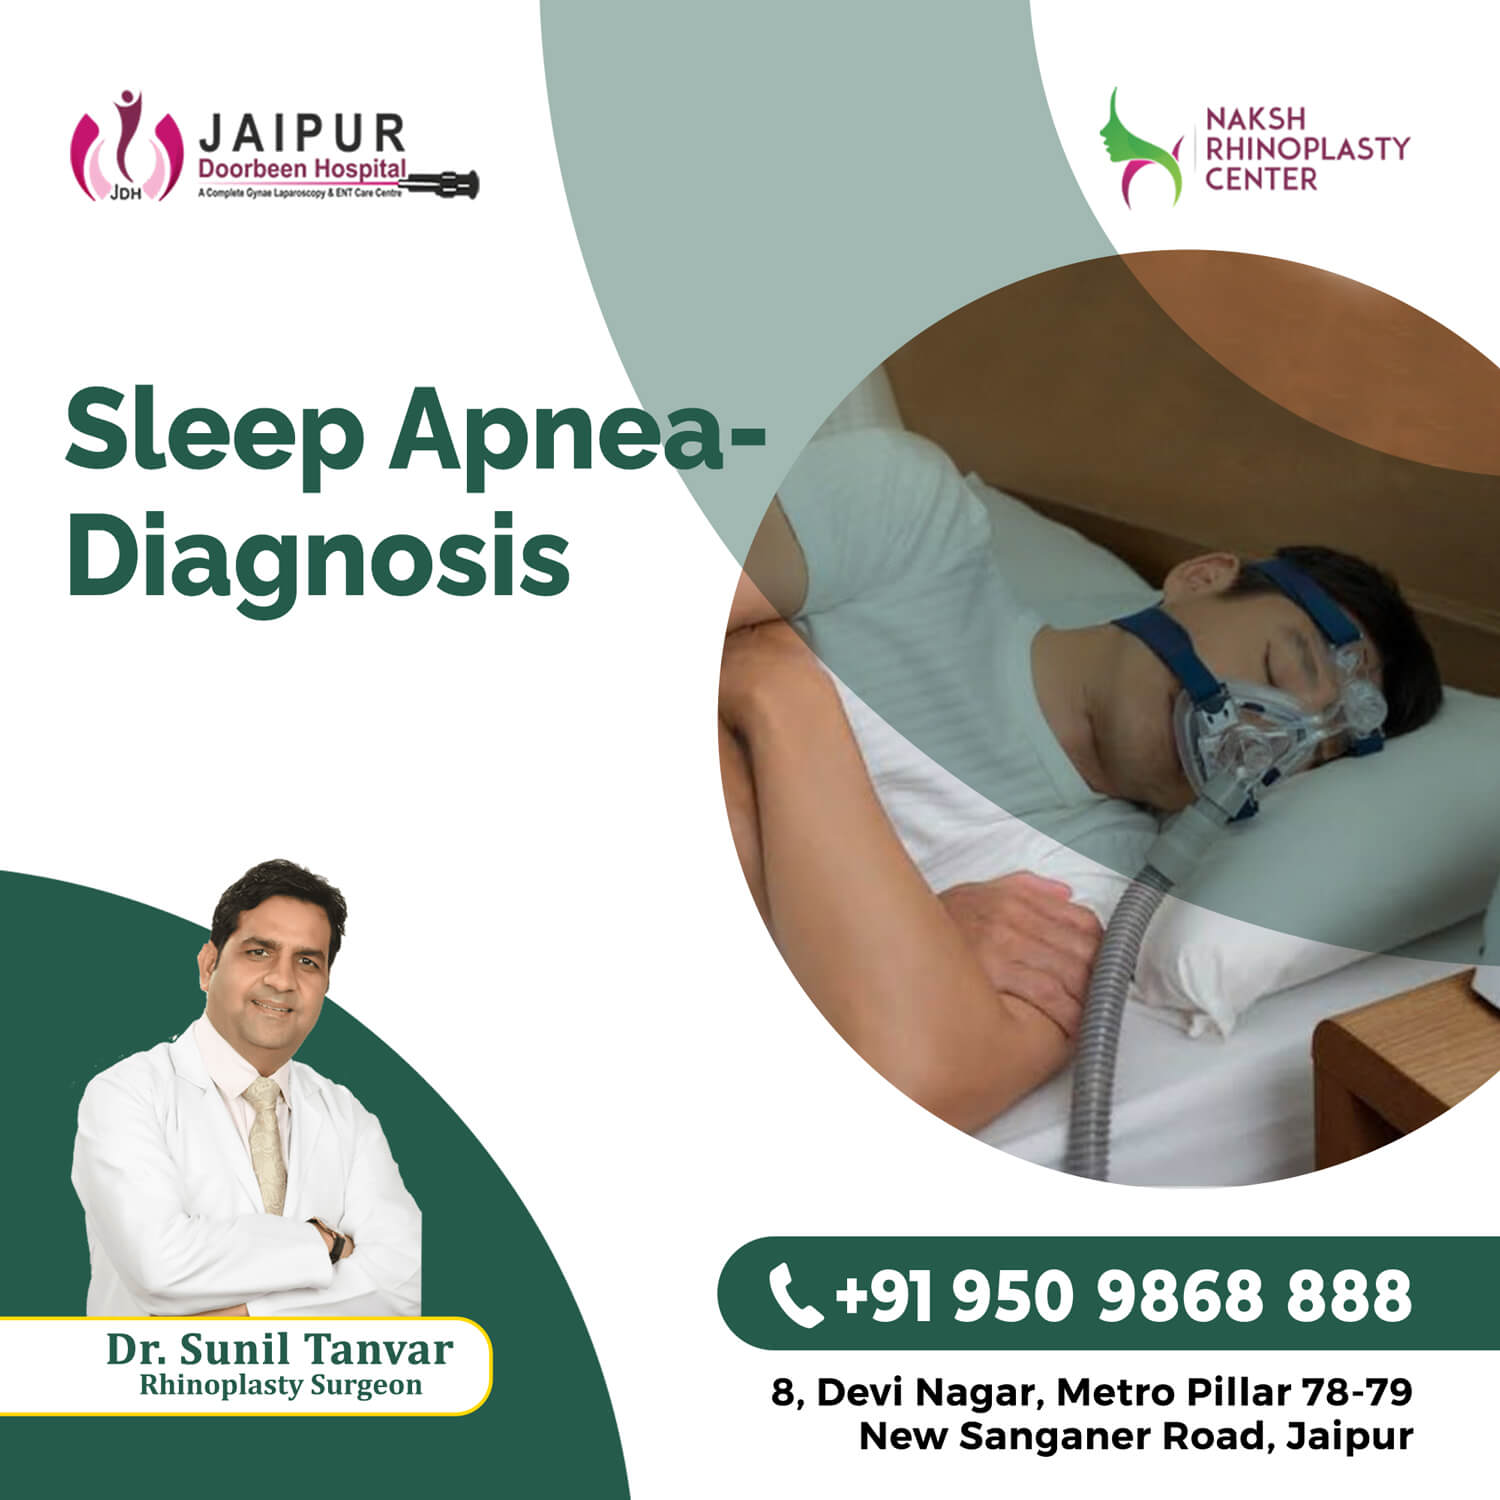 Sleep Apnea - Diagnosis